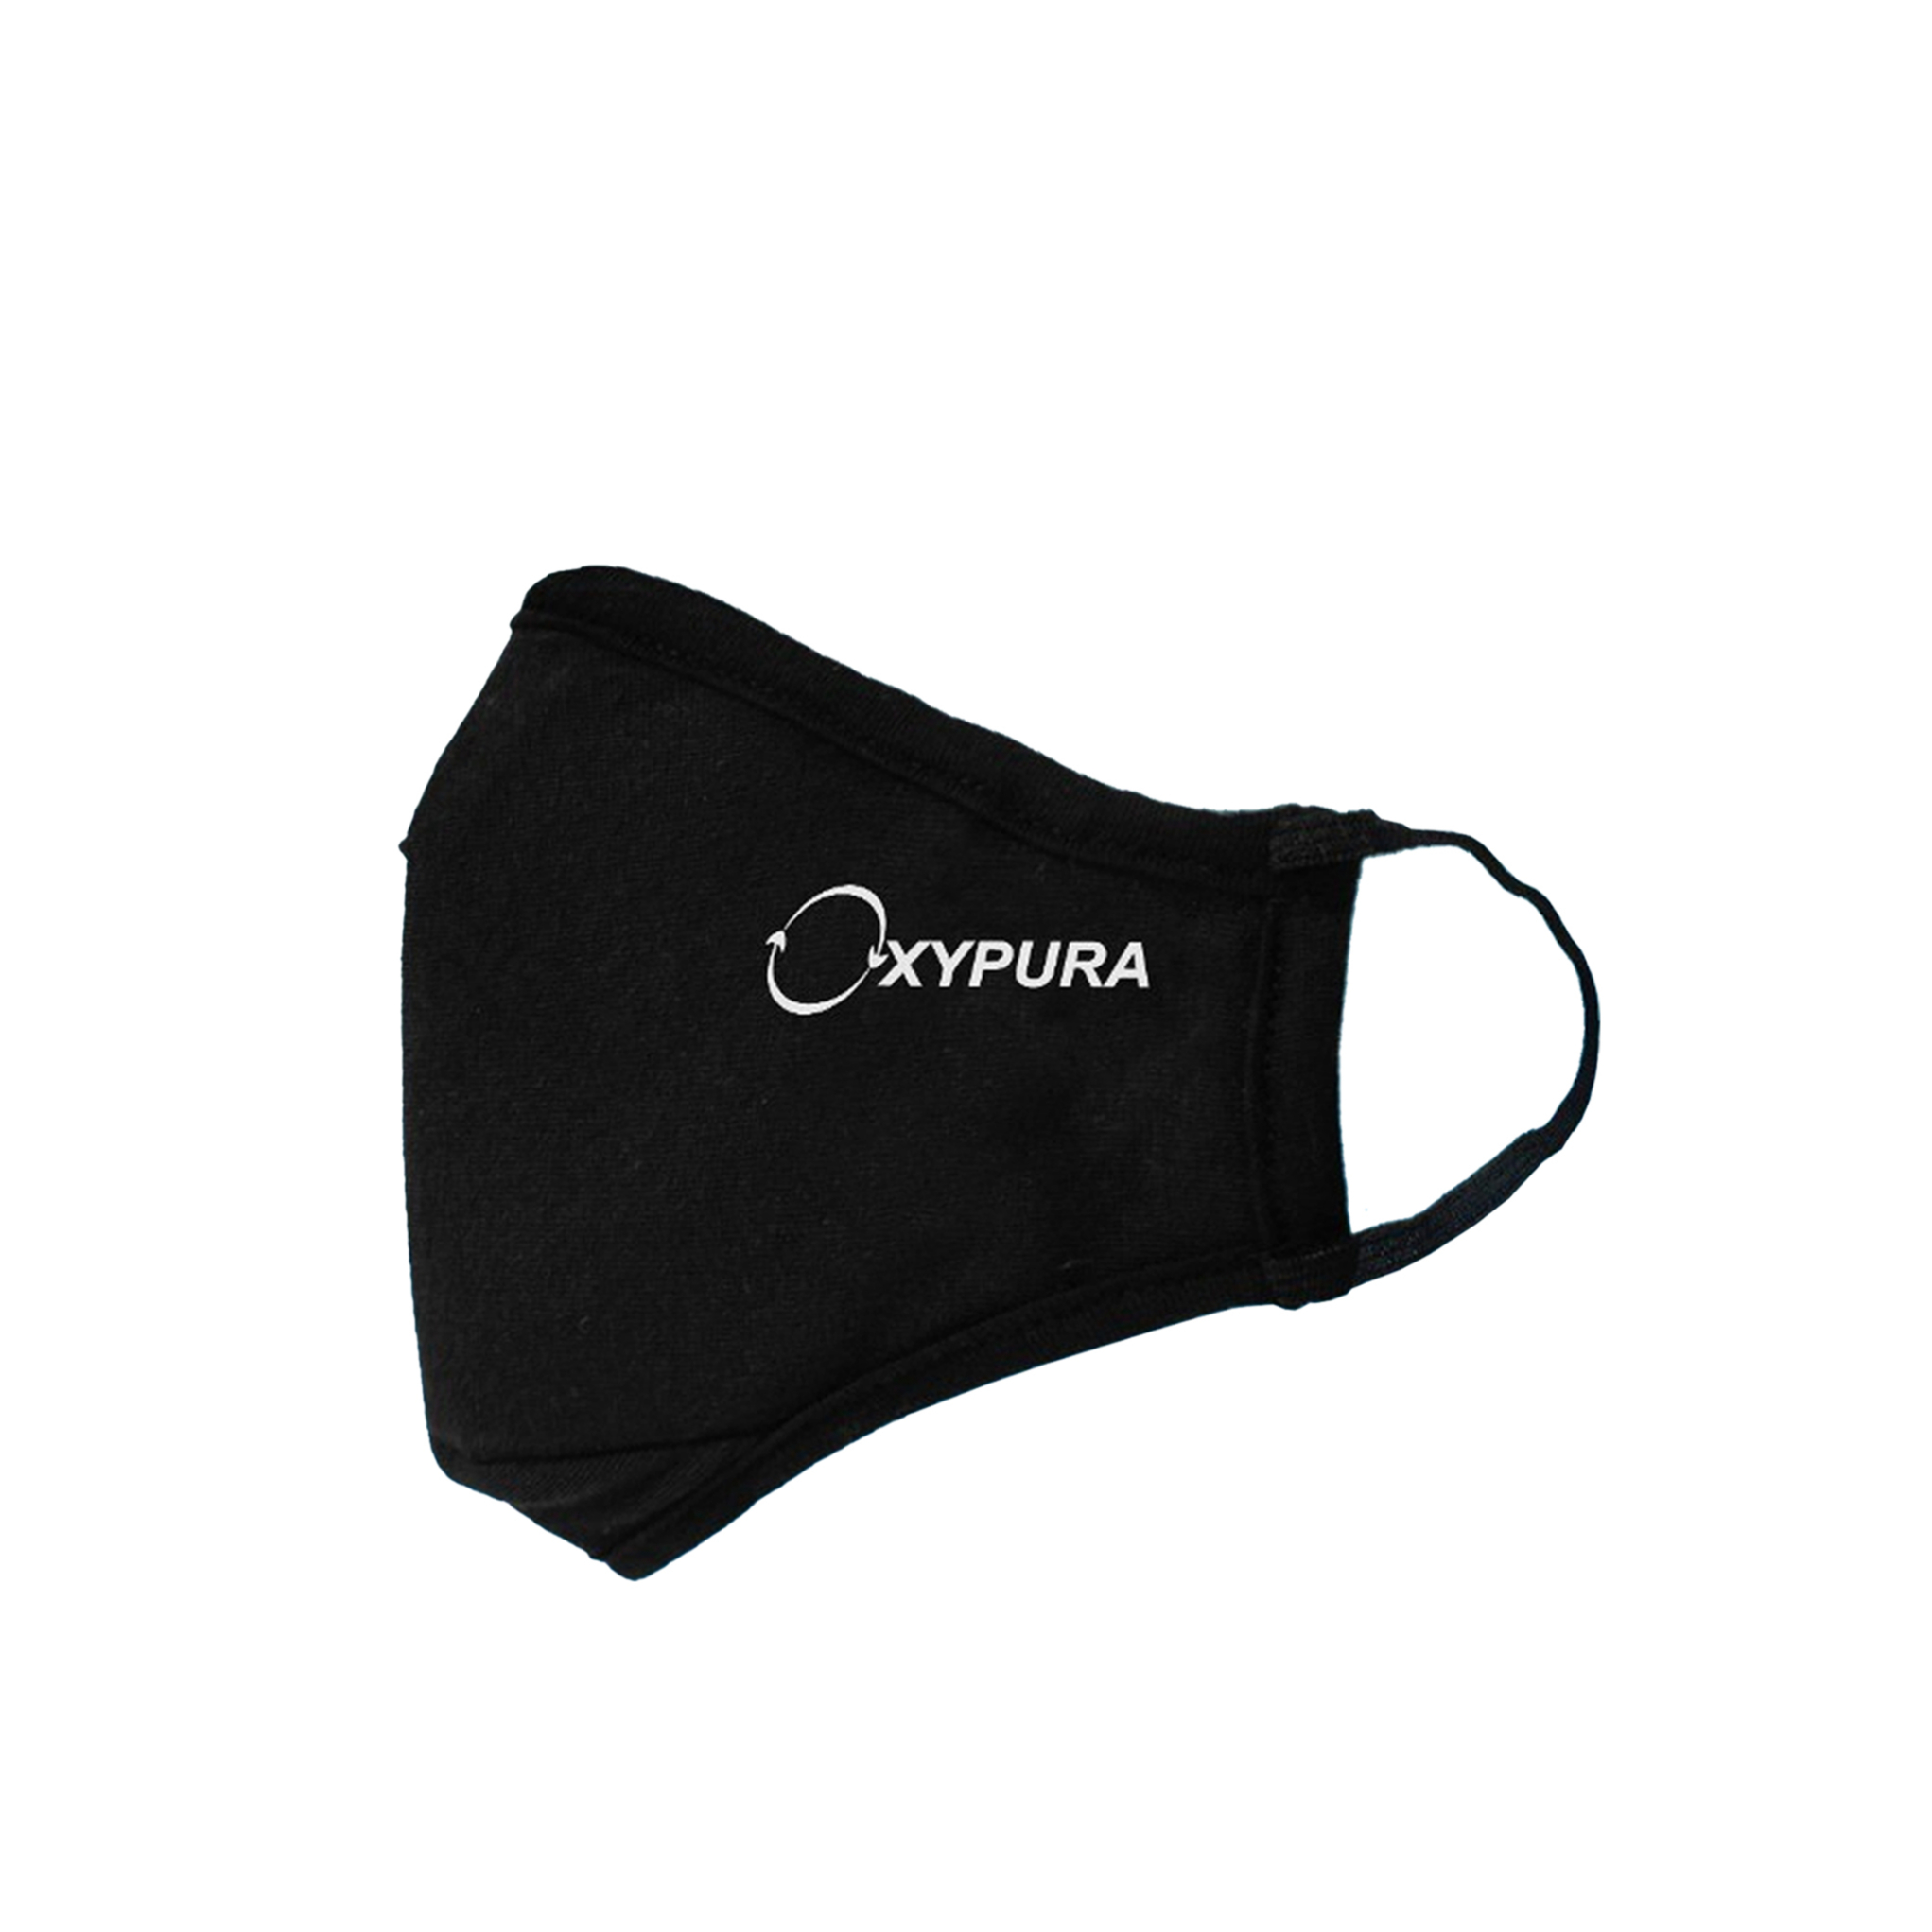 Oxypura Care Face Mask Black - OXYPURA - Cleaning Durables - in Sri Lanka